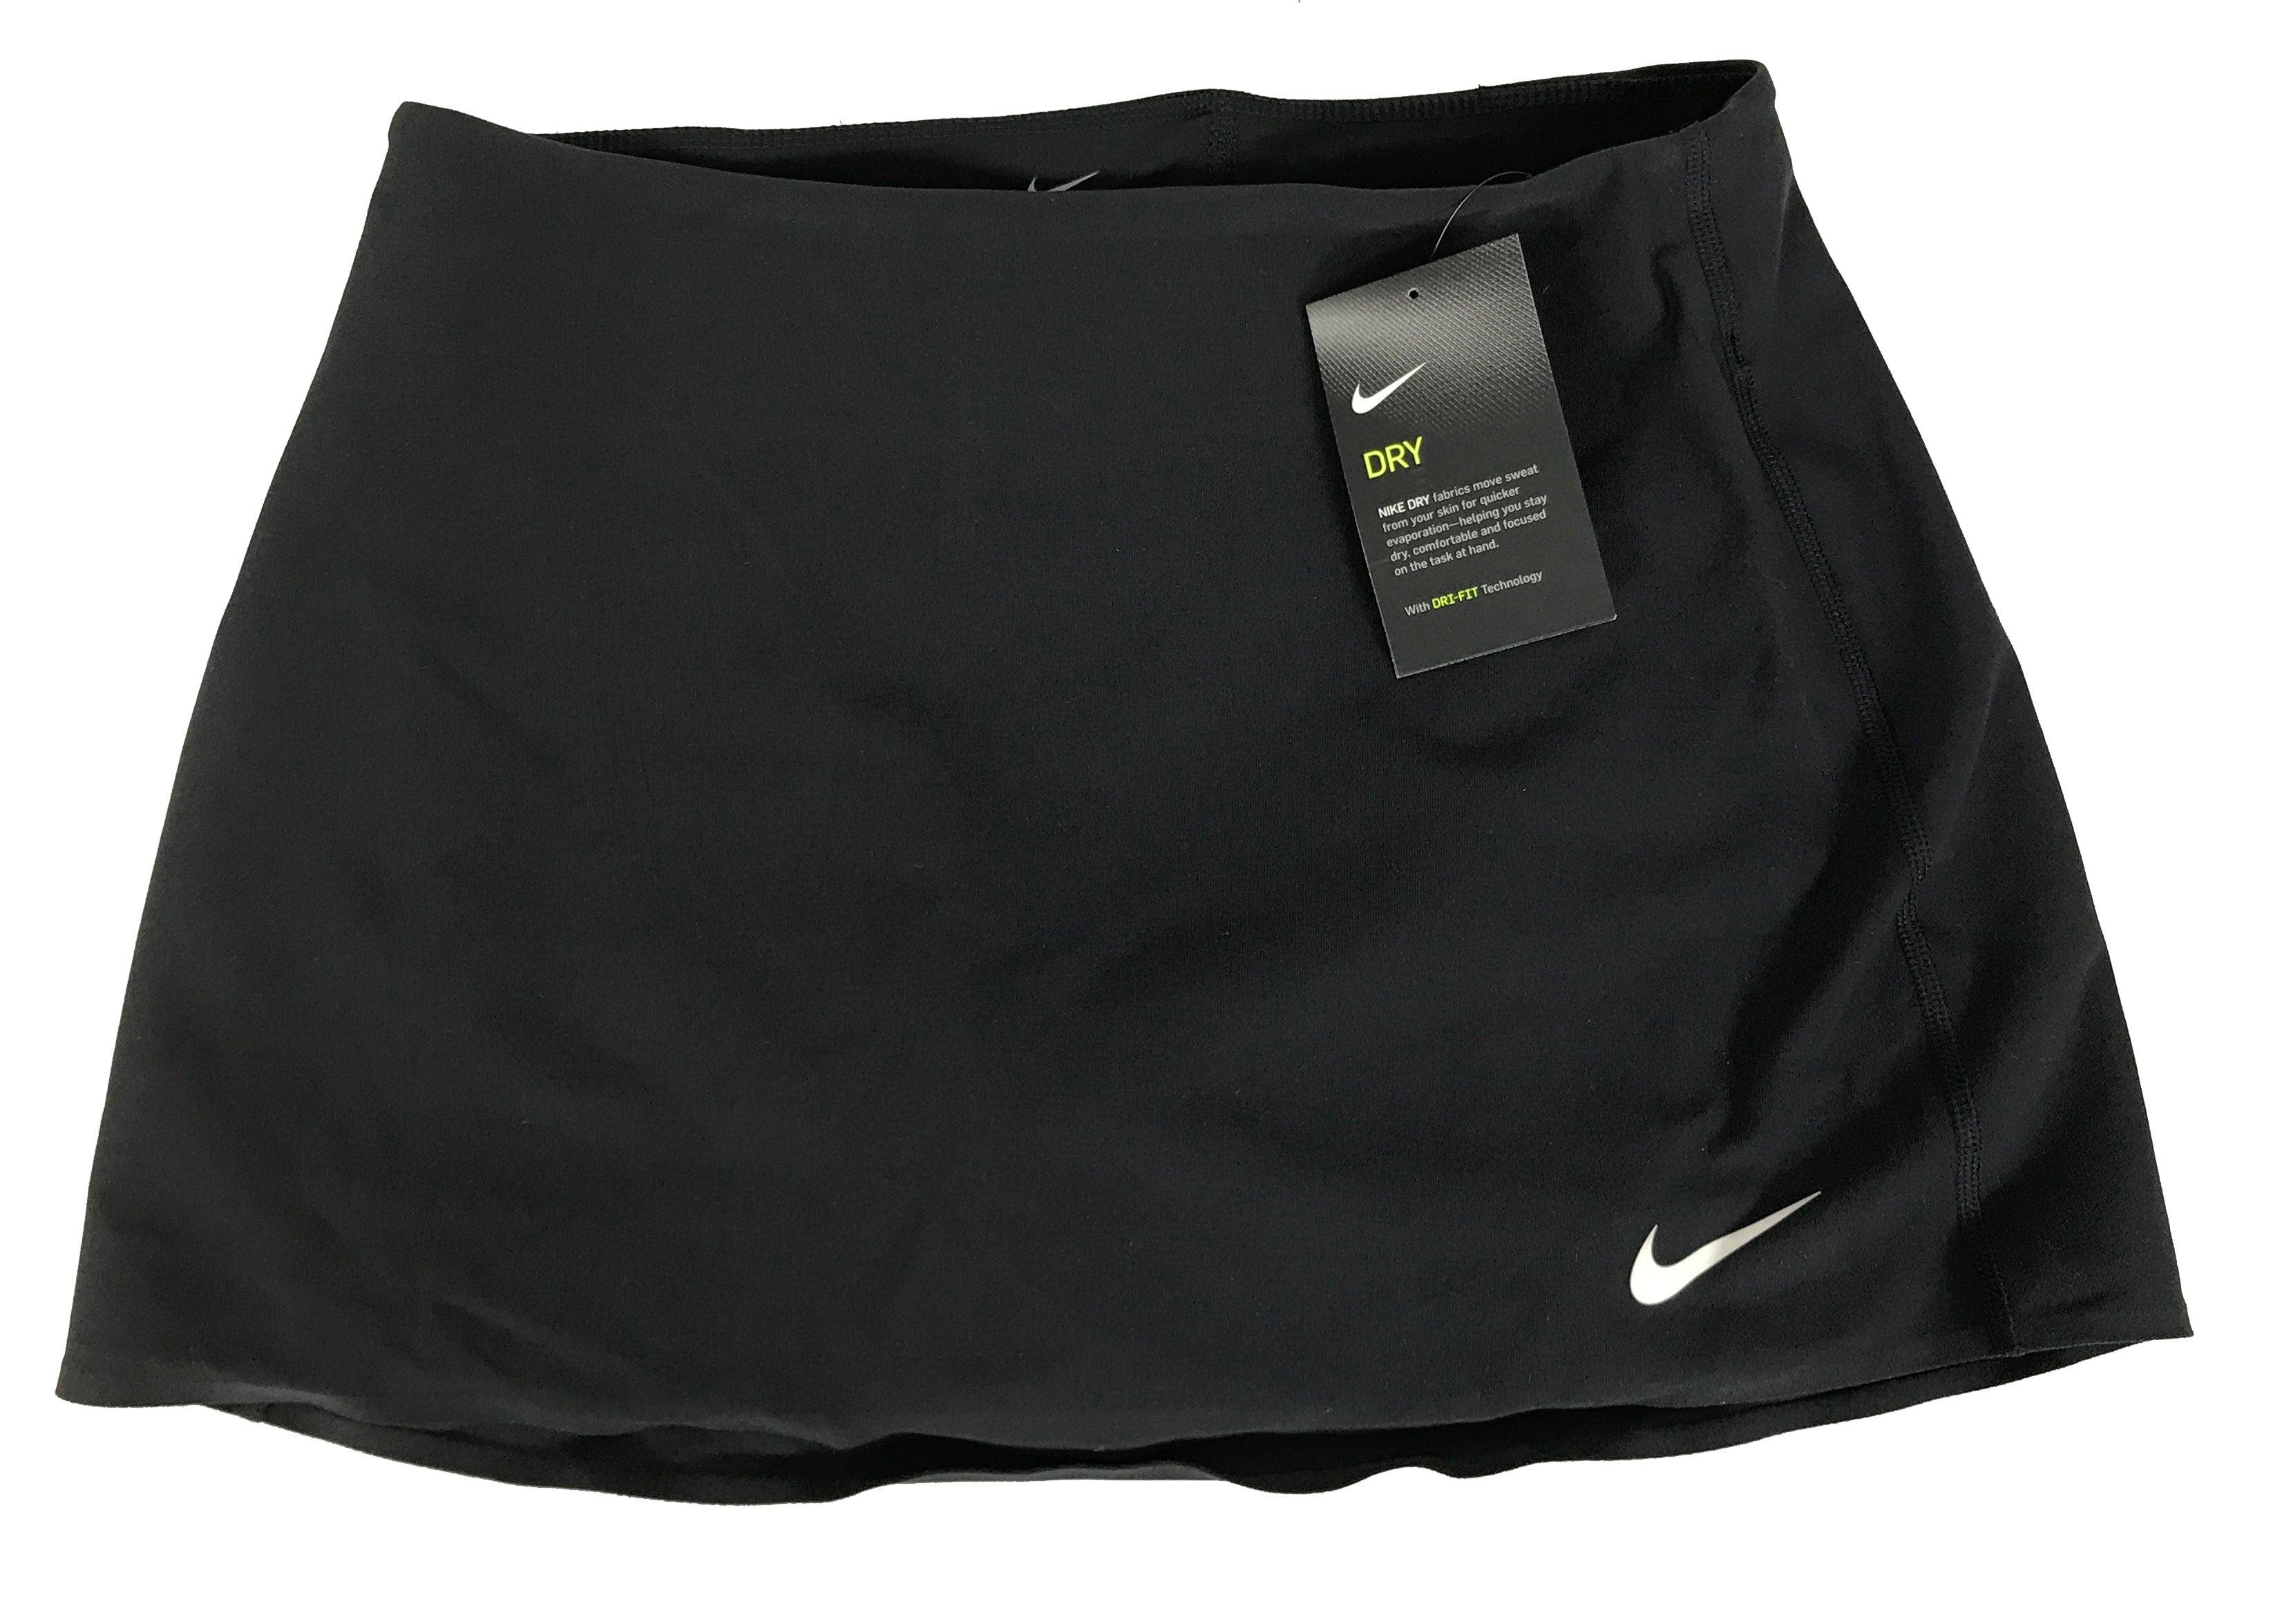 Nike Black Dri-Fit Tennis Skort Women's Size S